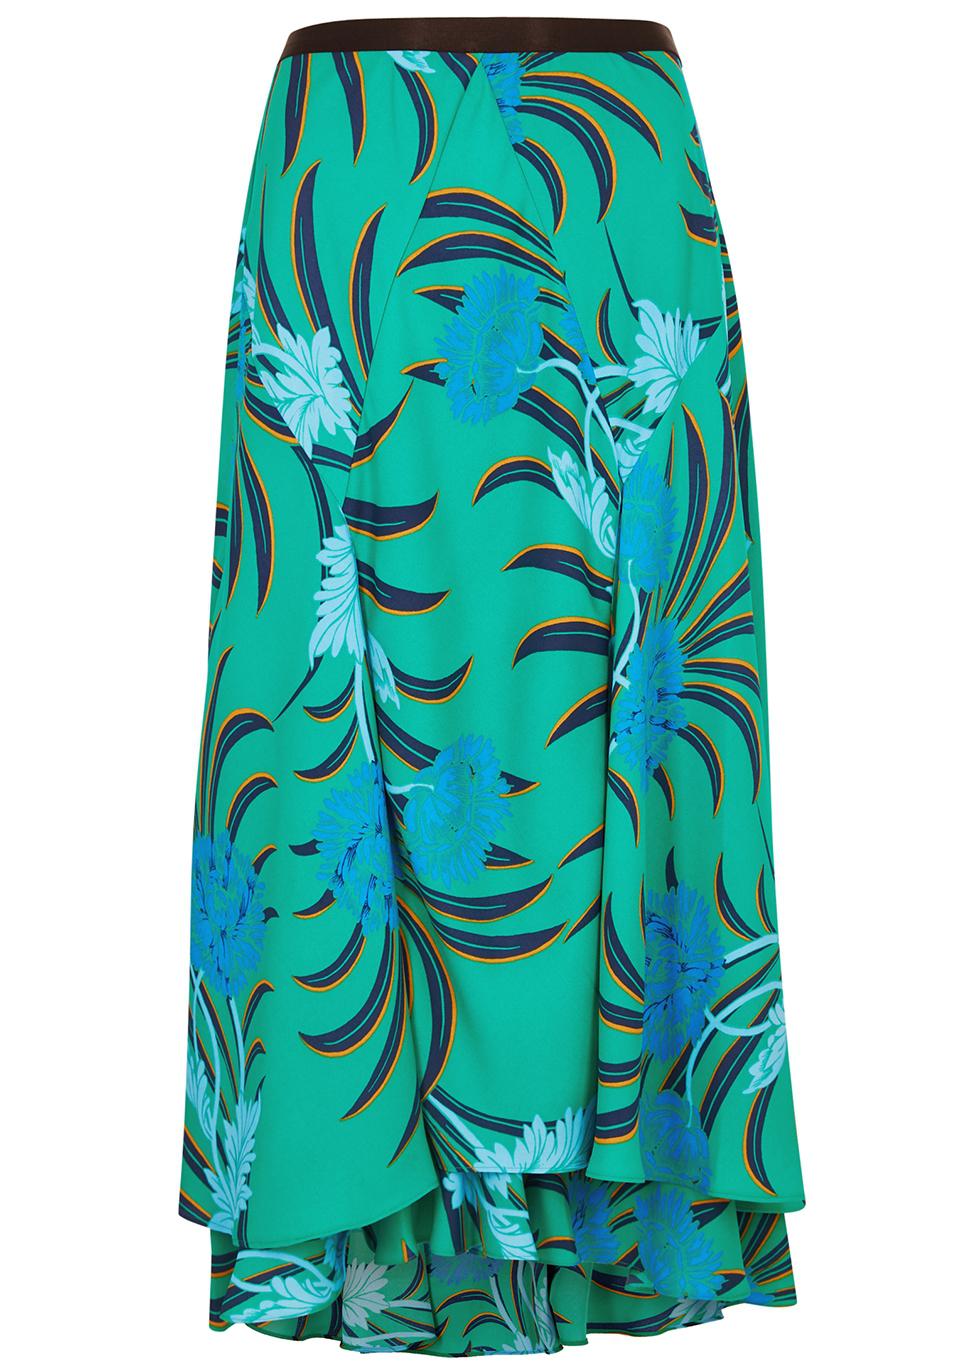 Debra green floral-print crepe de chine skirt by DIANE VON FURSTENBERG